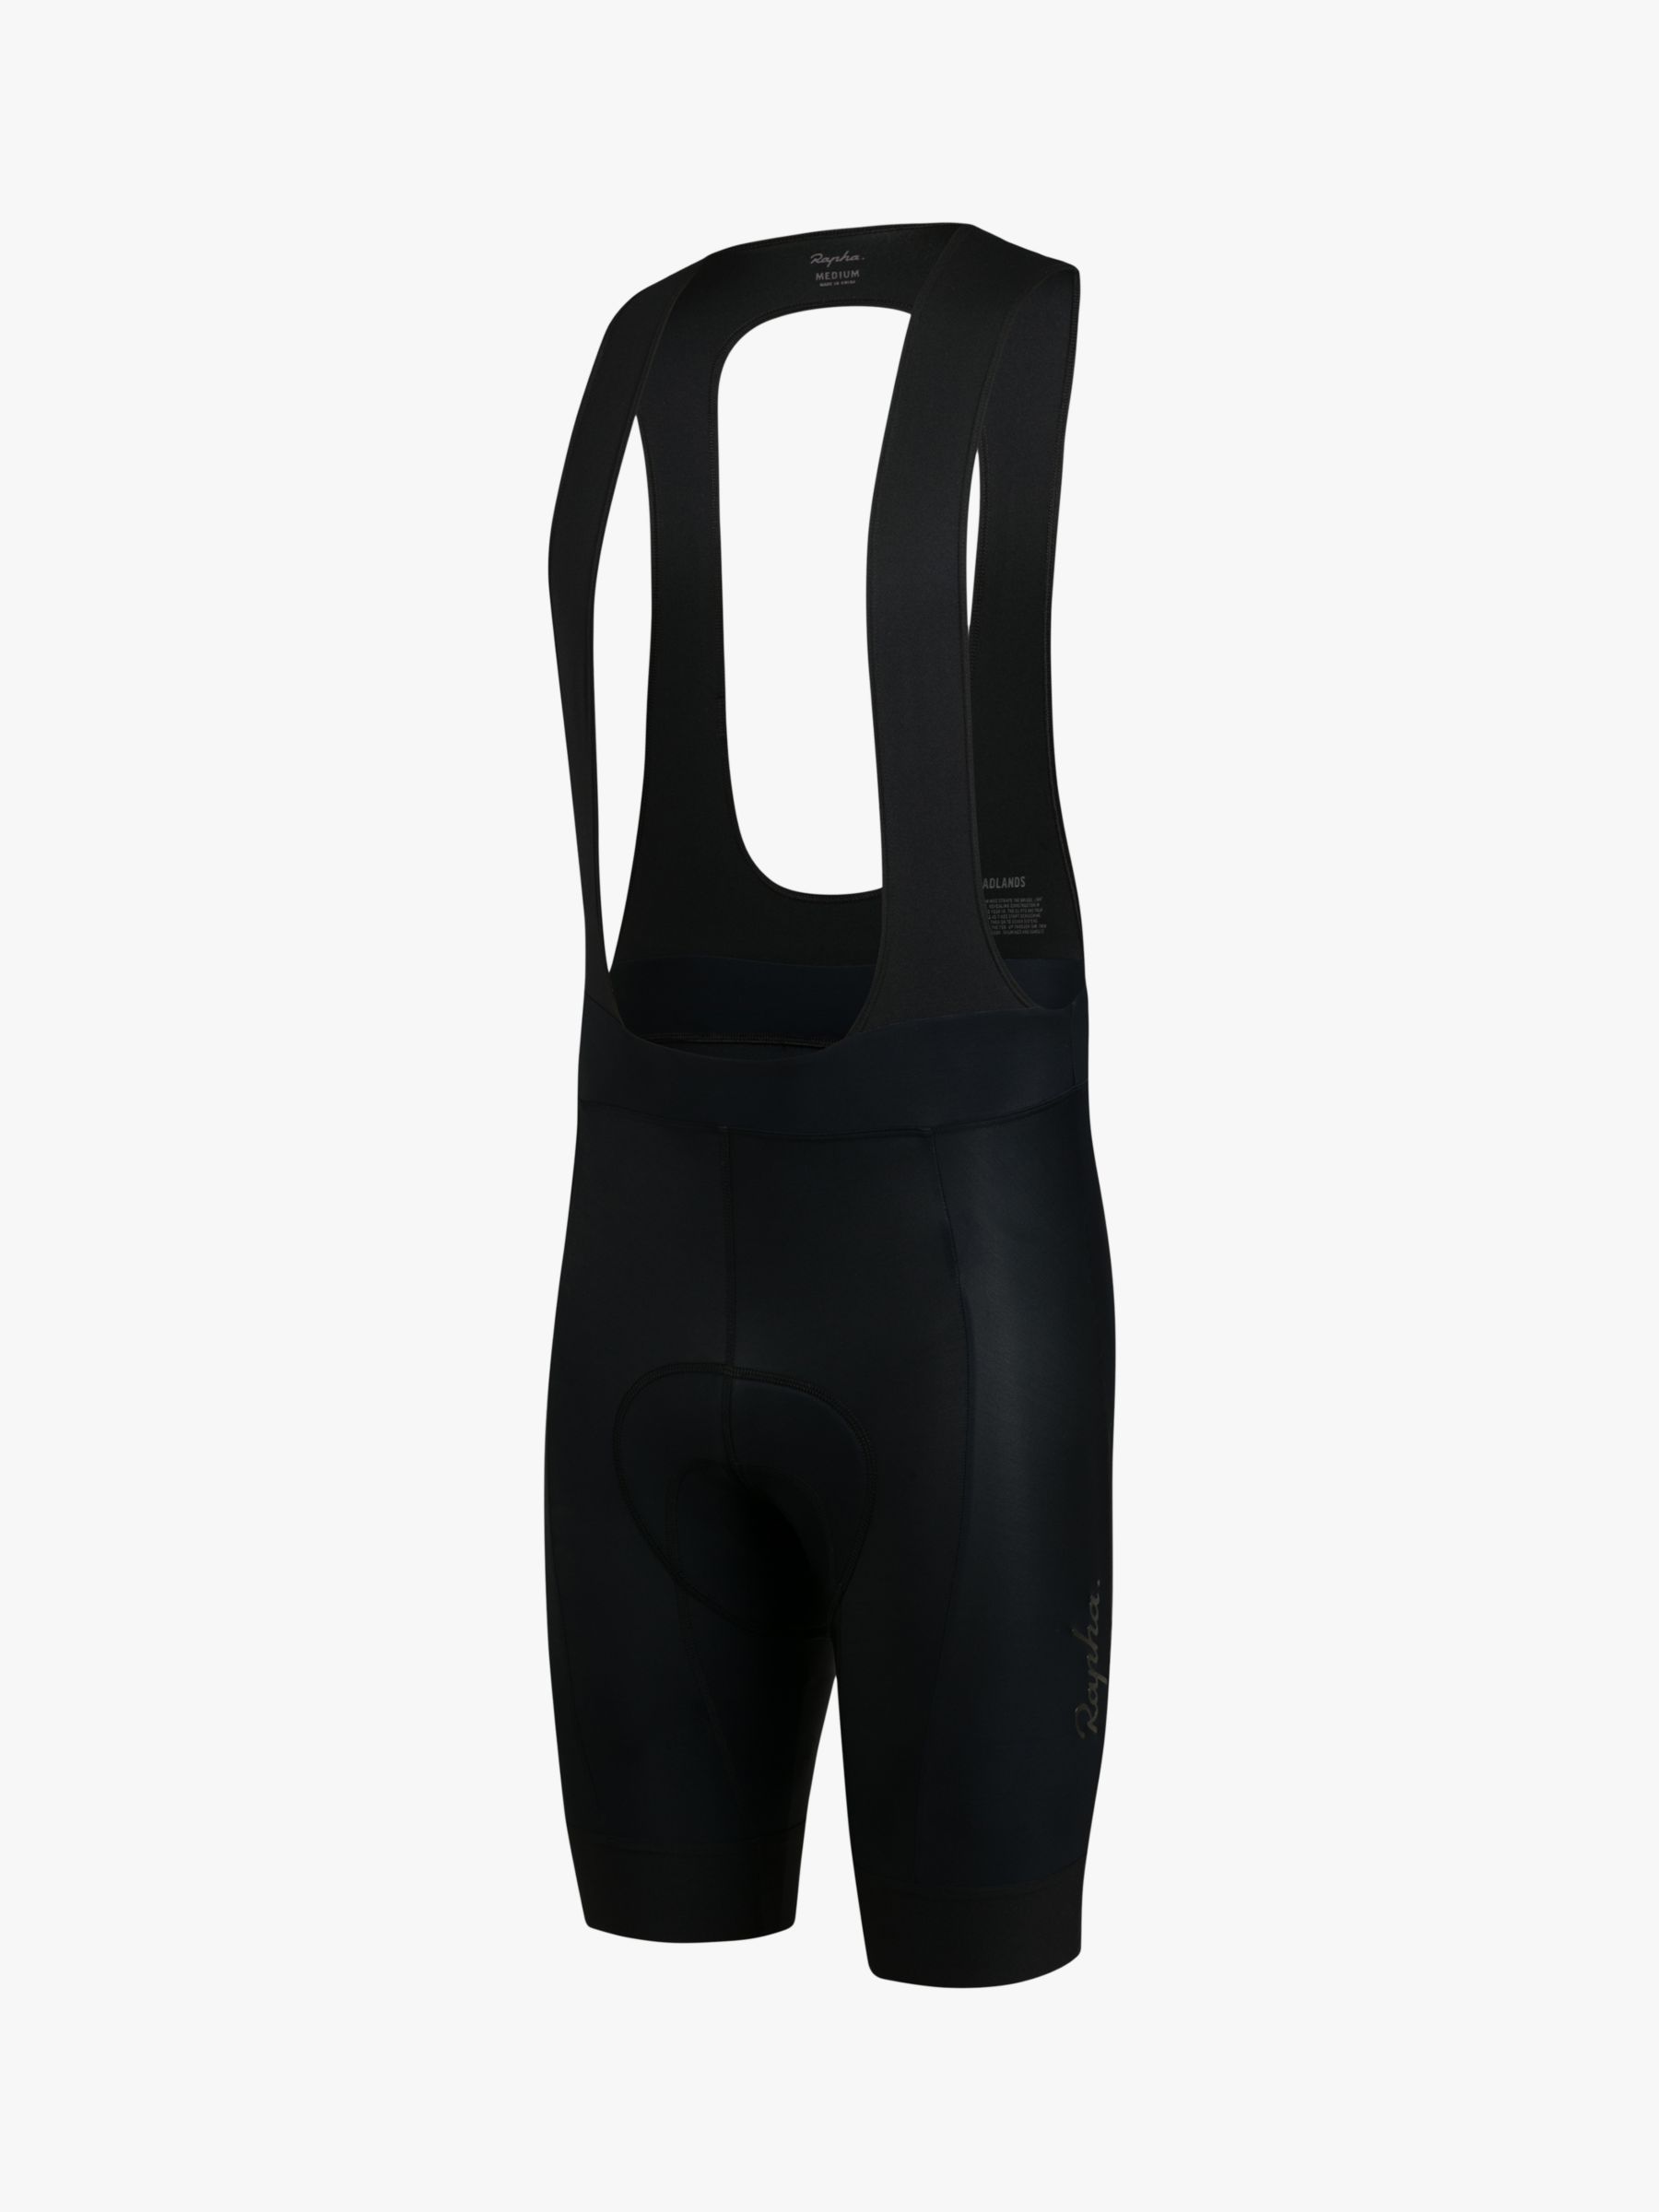 Rapha Core Bib Cycling Shorts, Black/Black, S